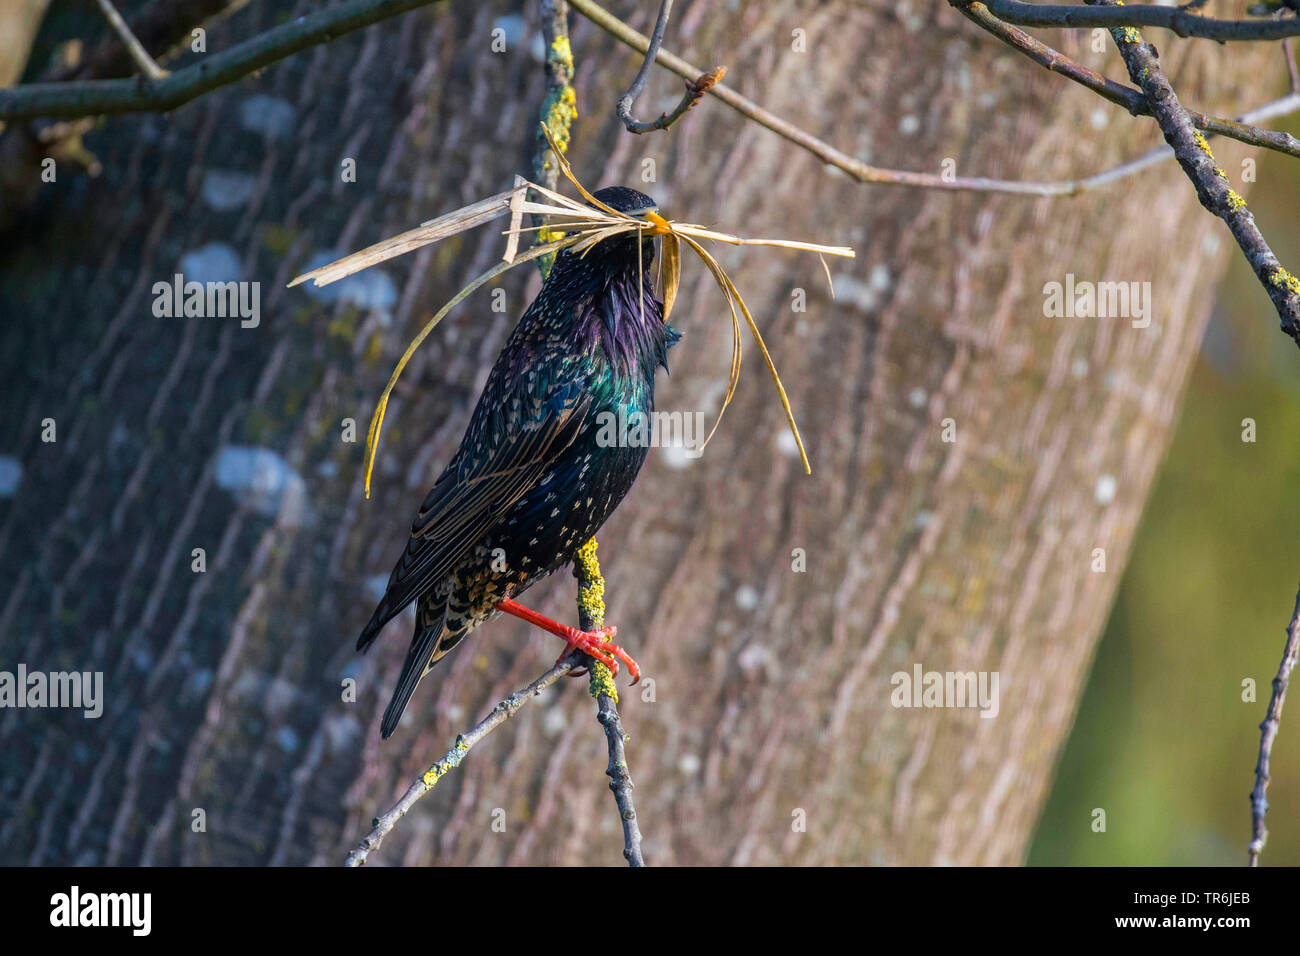 common starling (Sturnus vulgaris), with nesting material in the beak, Germany, Bavaria Stock Photo